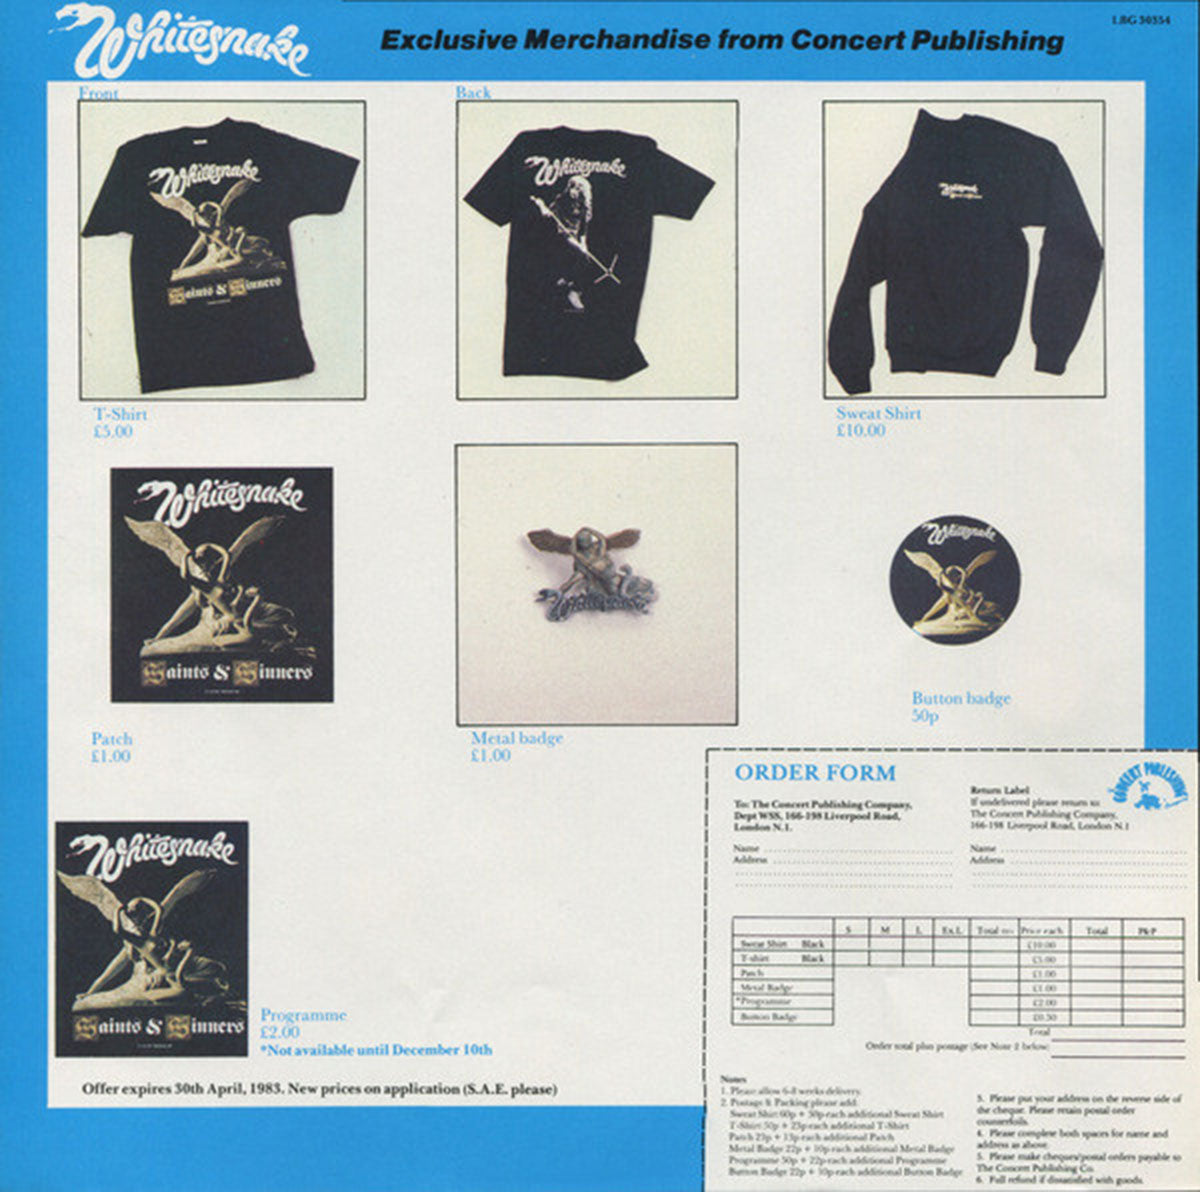 Whitesnake – Saints & Sinners - UK Pressing